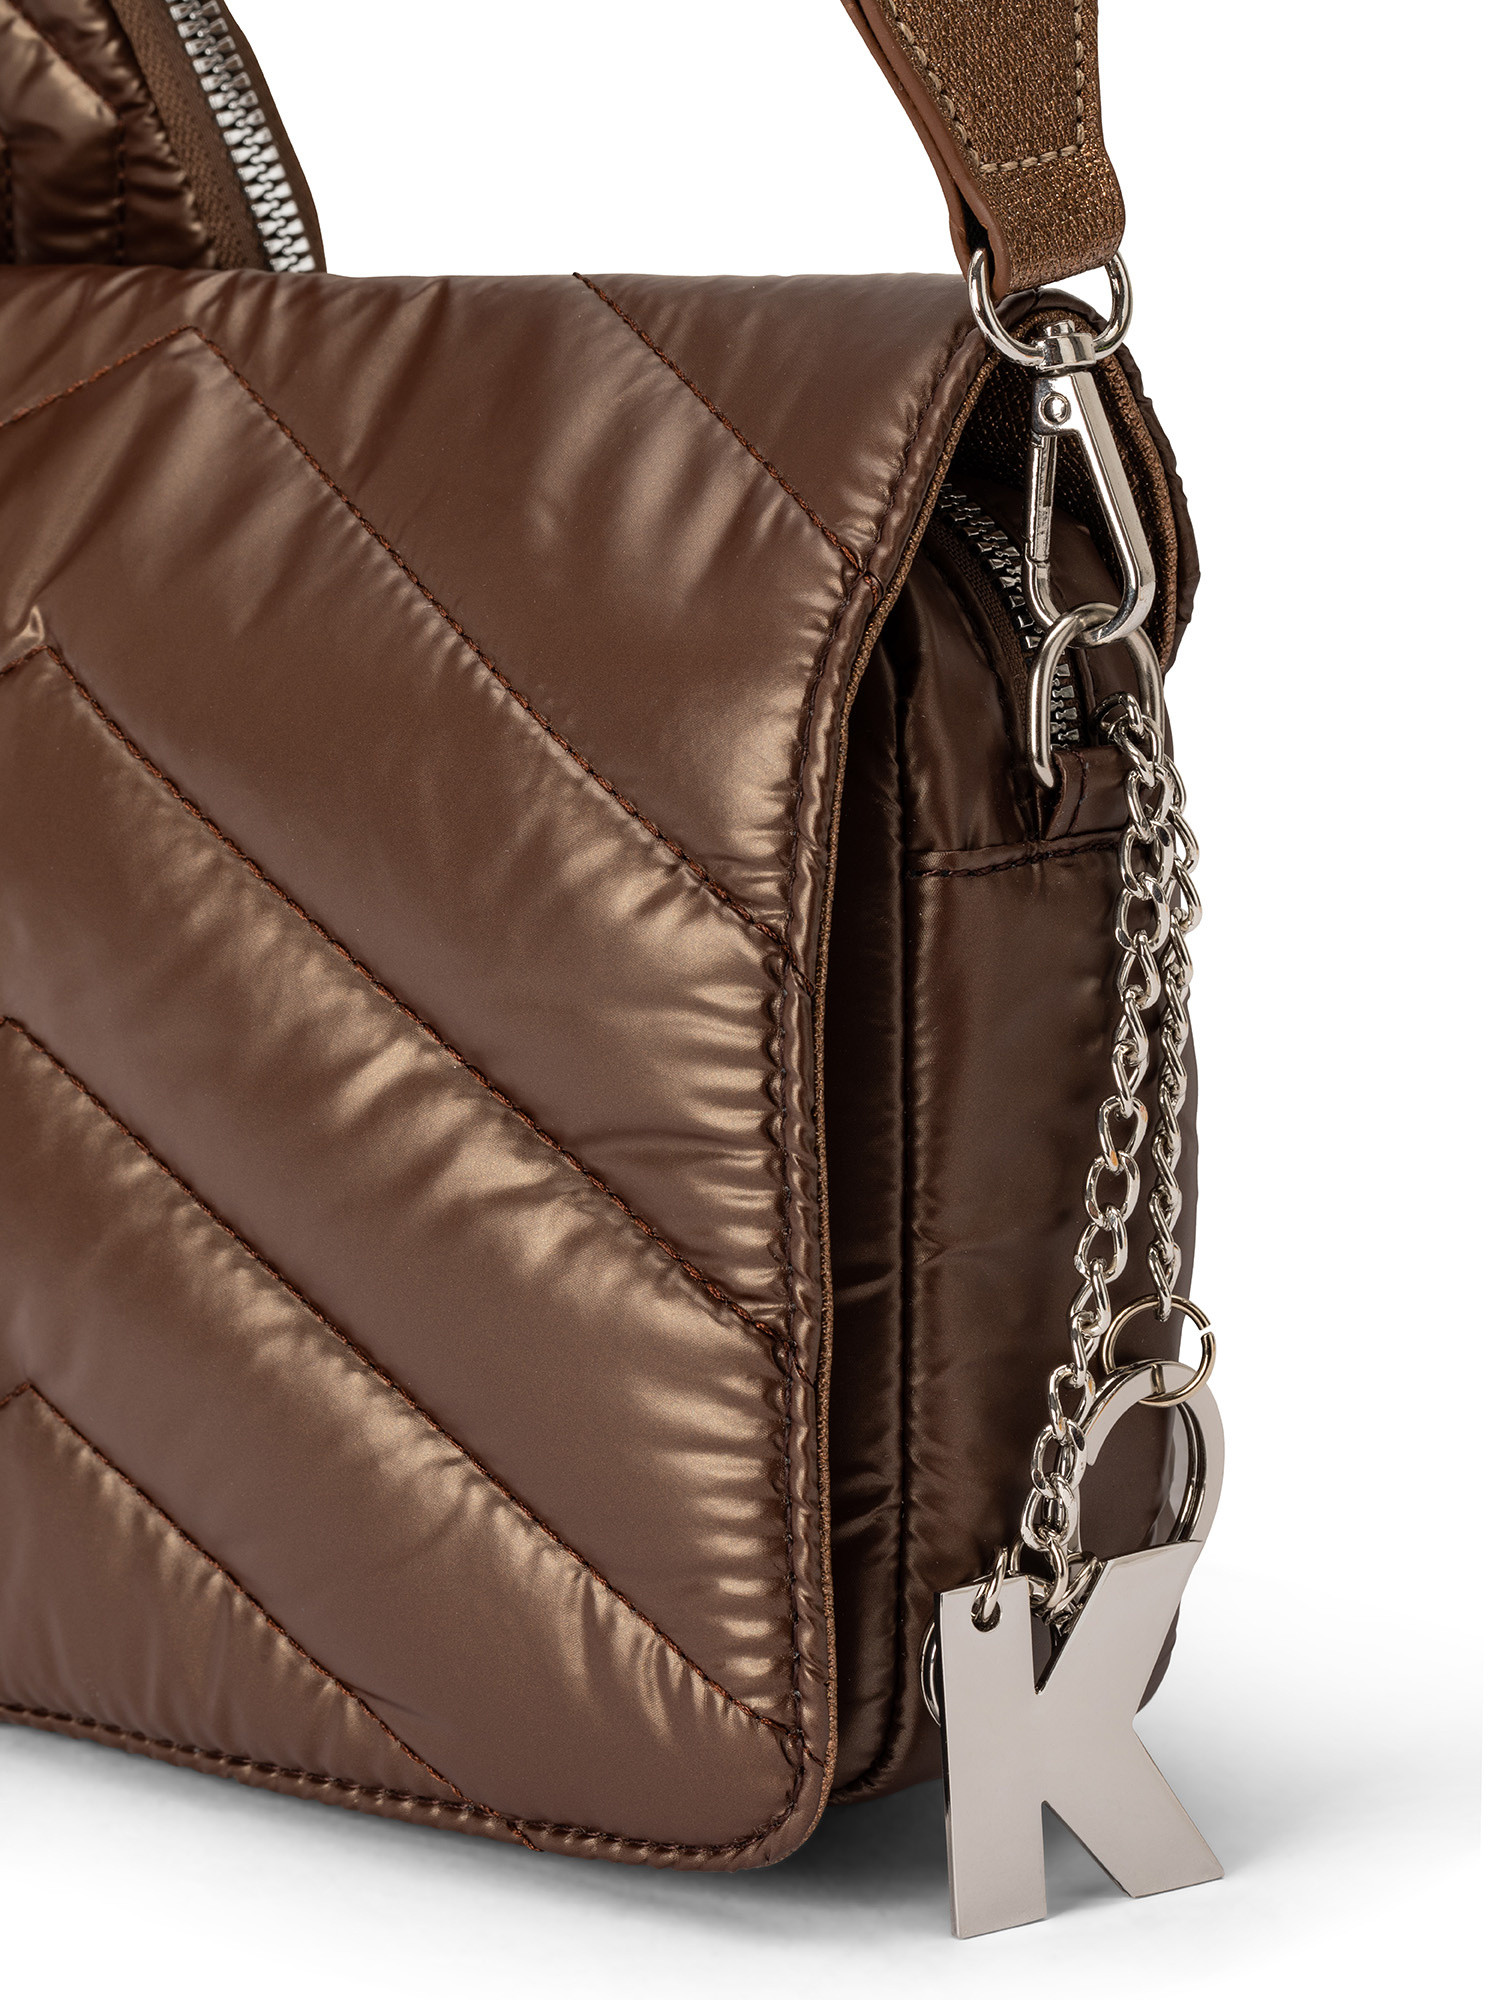 Koan - Nylon shoulder bag, Brown, large image number 2